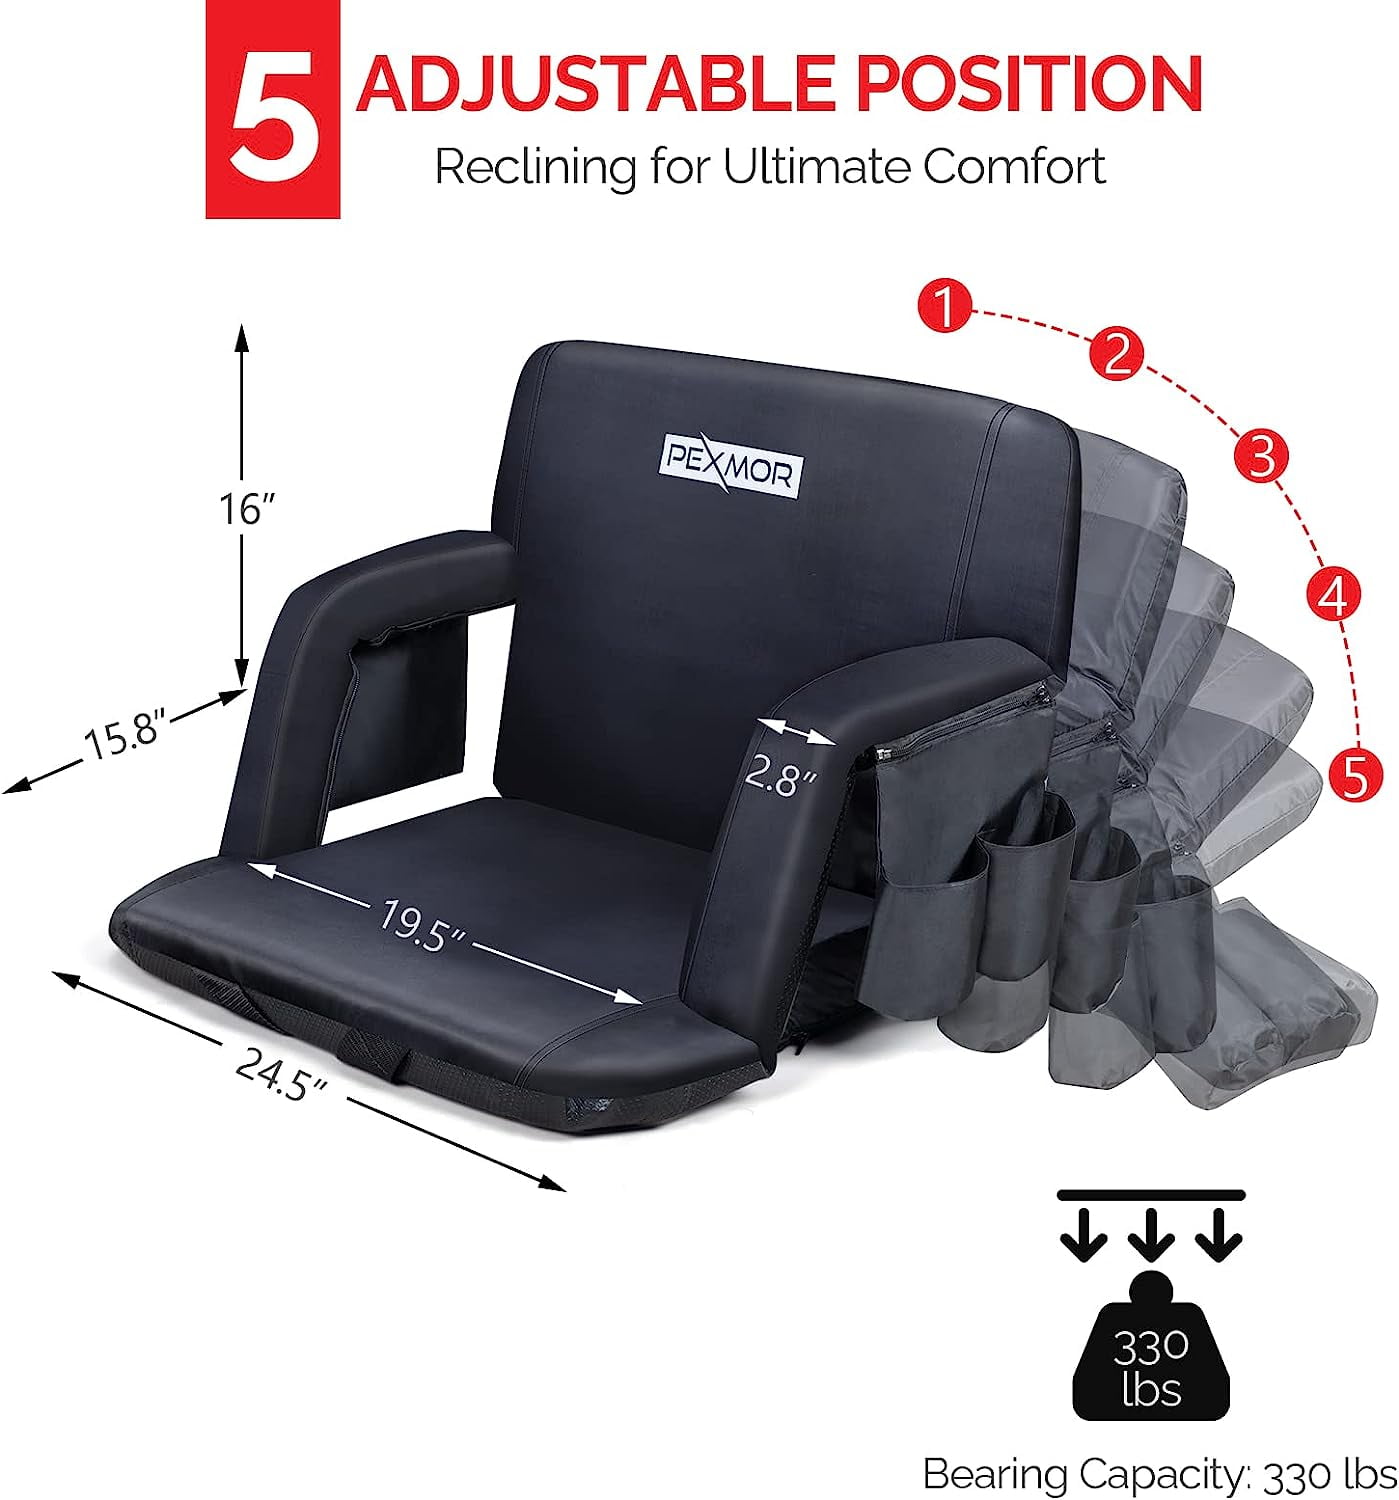 The Rechargeable Massaging Heated Stadium Seat - Hammacher Schlemmer